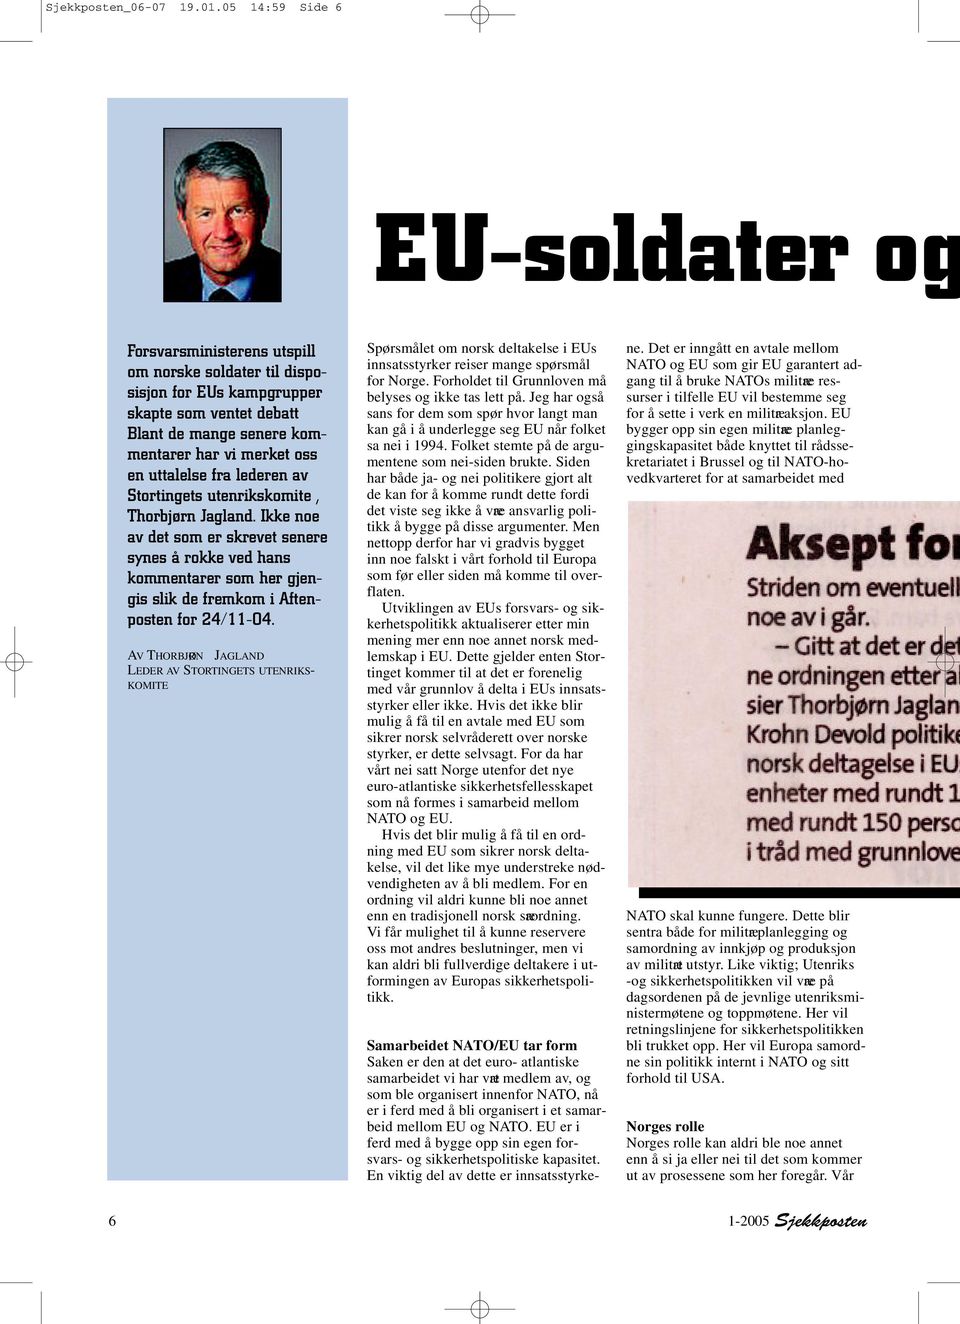 uttalelse fra lederen av Stortingets utenrikskomite, Thorbjørn Jagland.